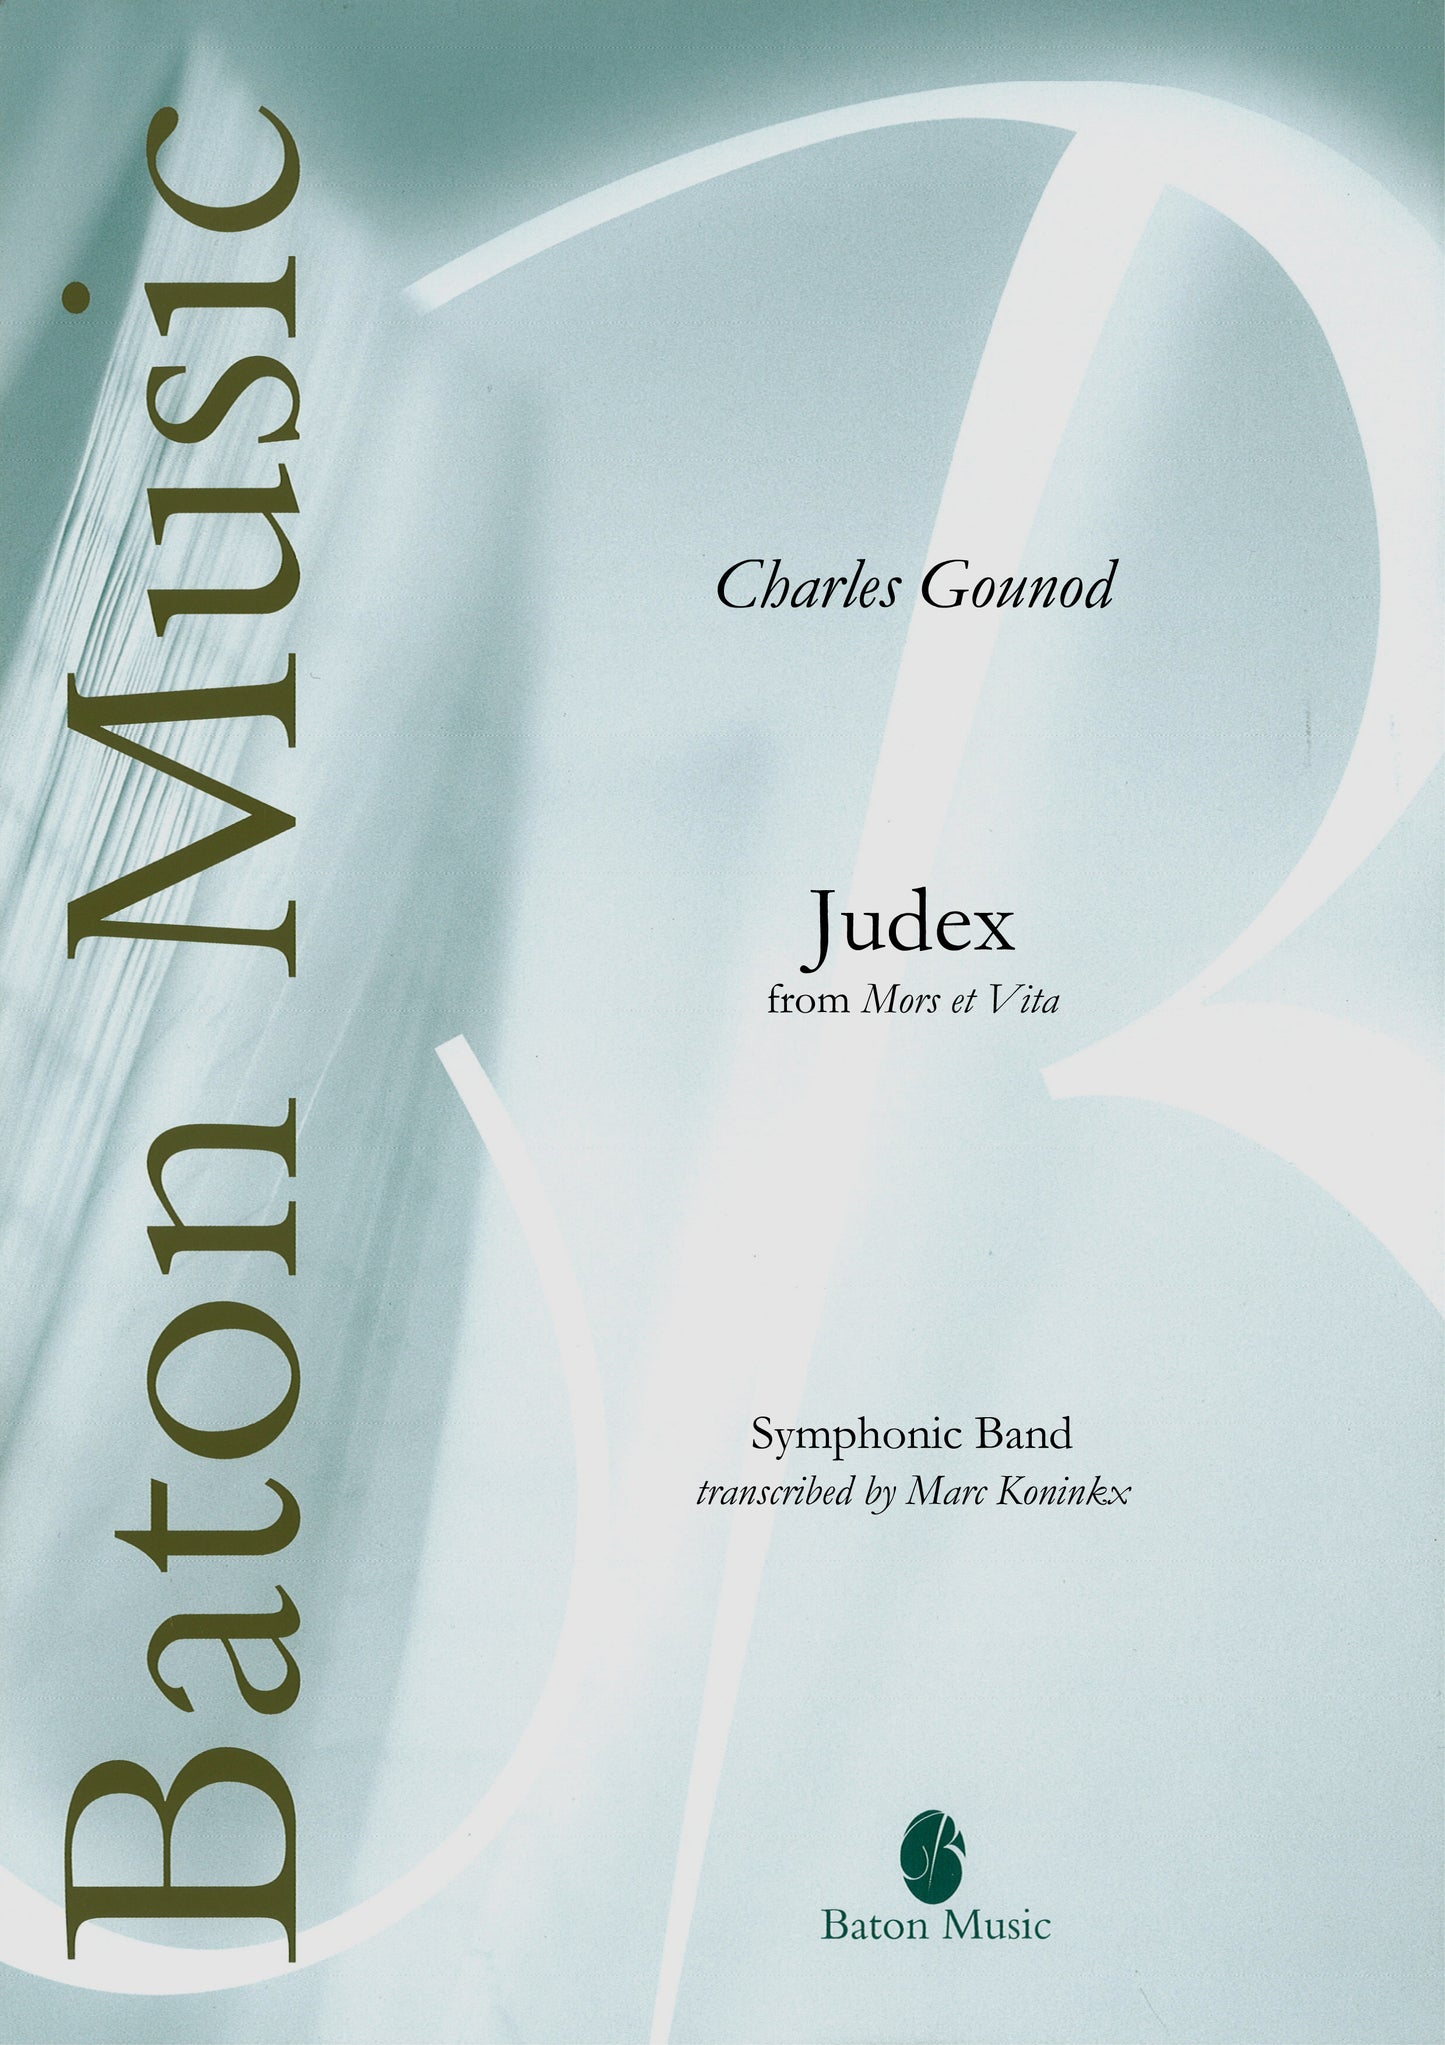 Judex (from Mors et Vita) - C. Gounod